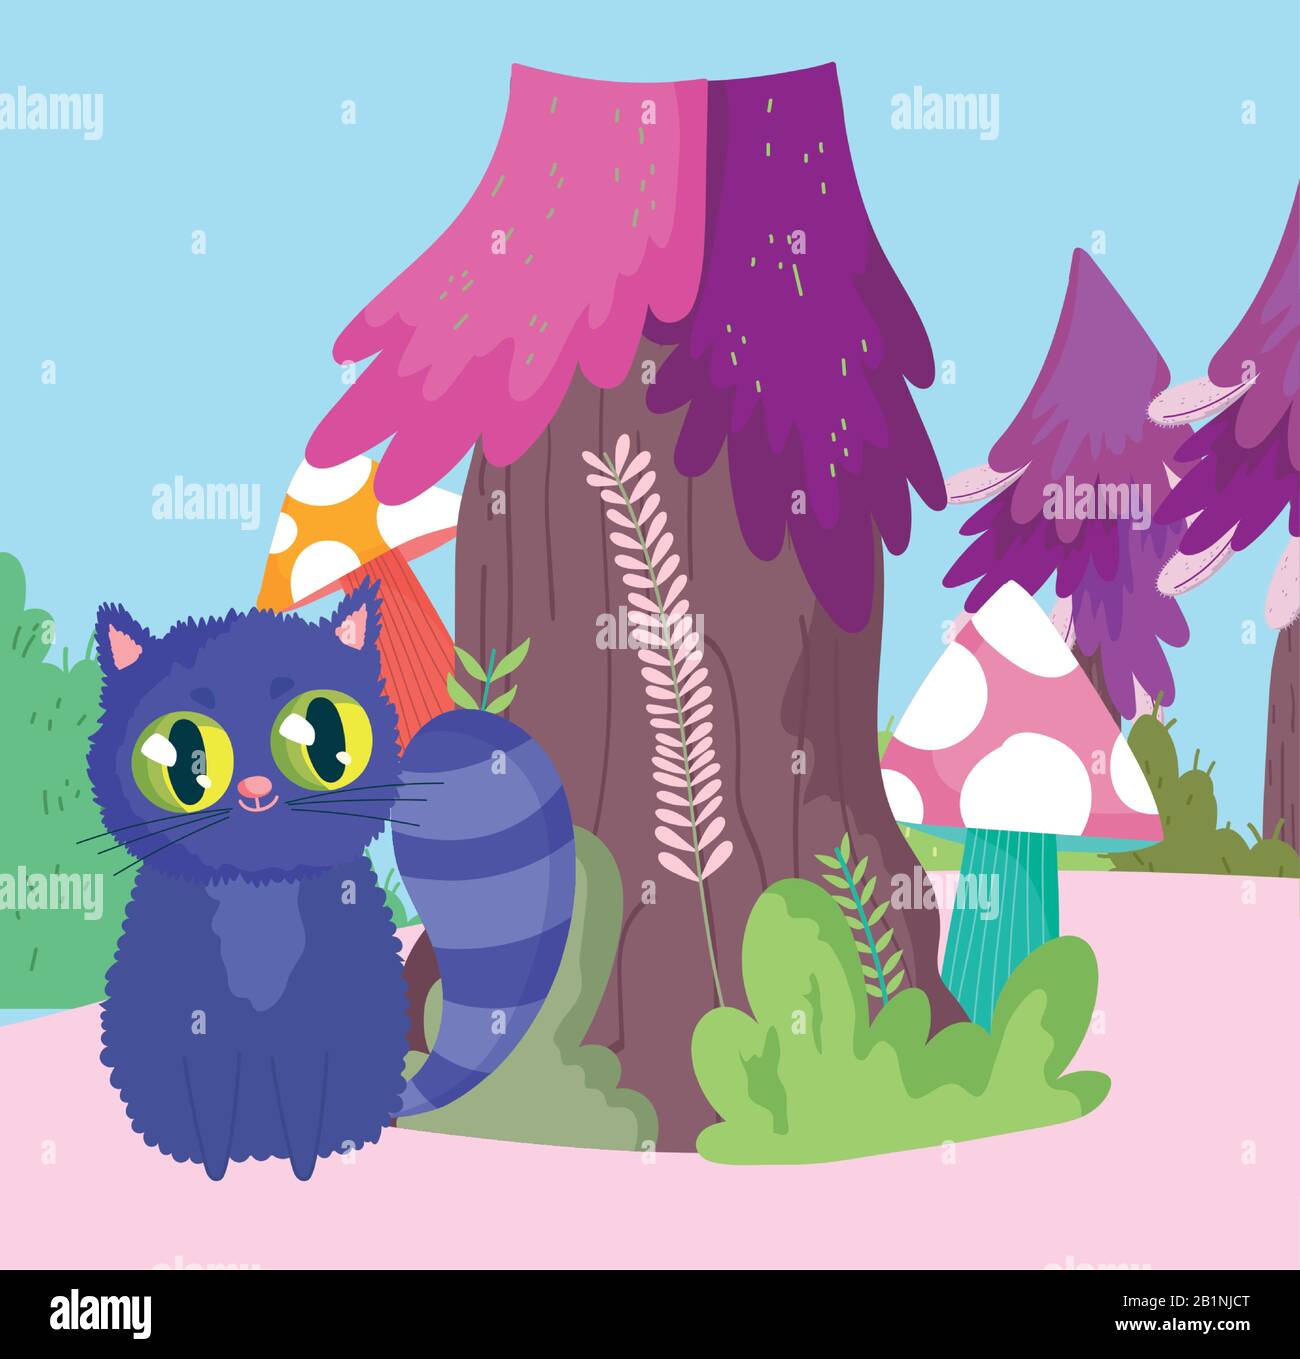 wonderland, cat mushroom tree nature cartoon vector illustration Stock Vector